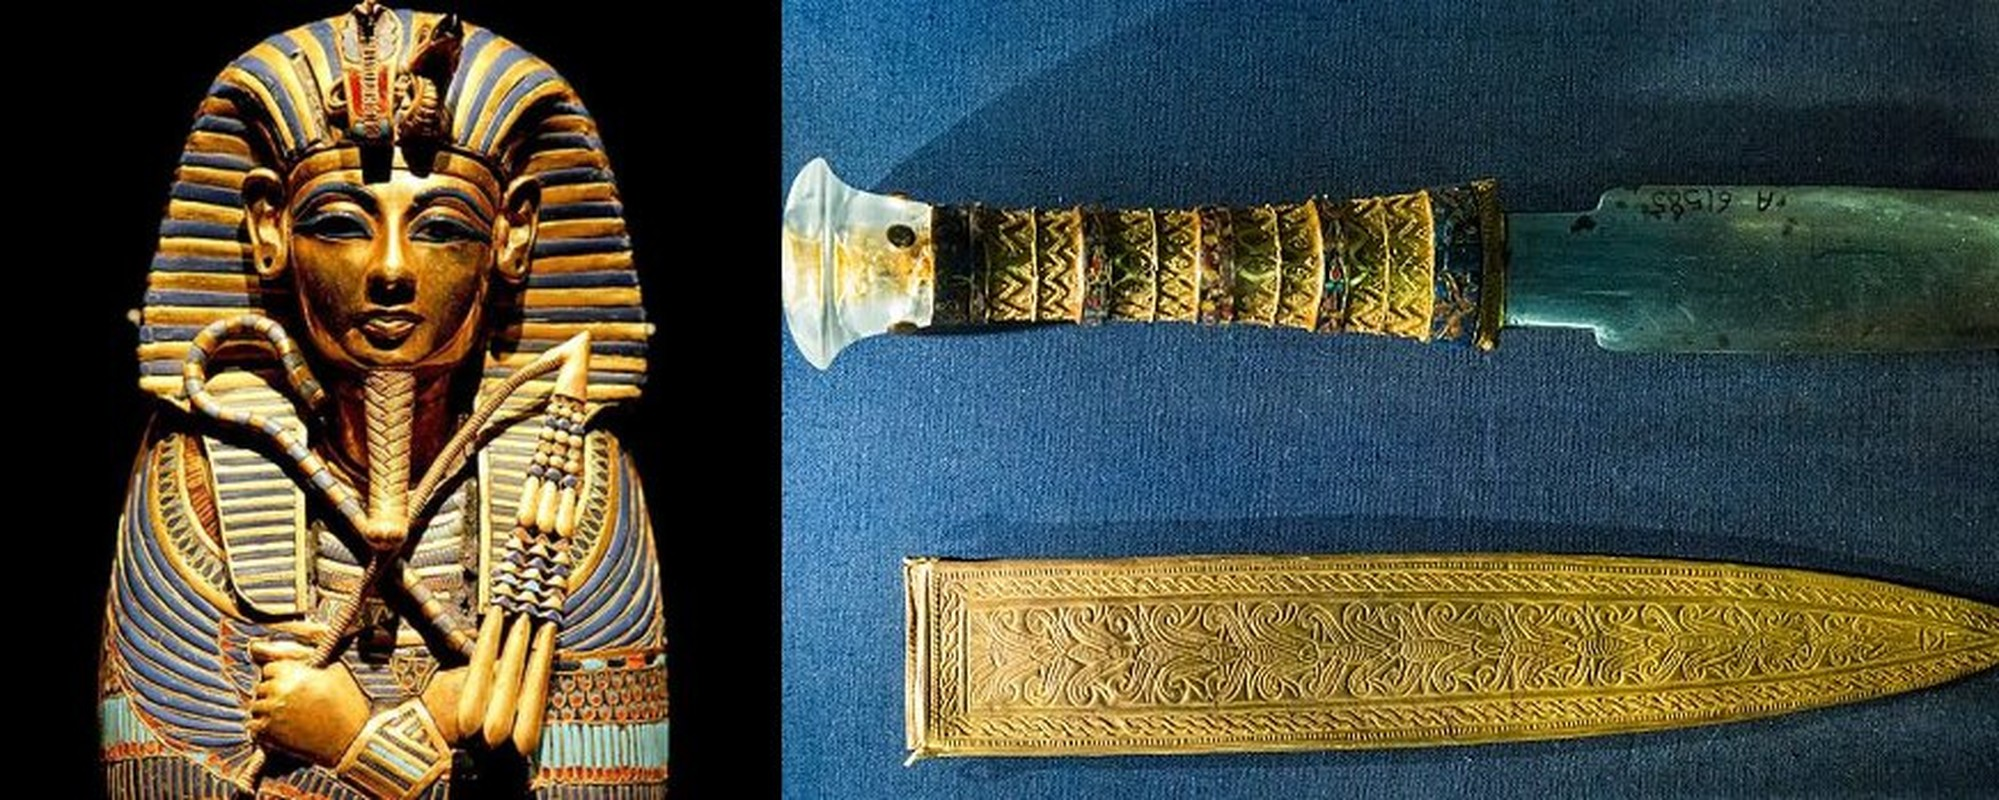 Bi an dao gam vang trong mo Tutankhamun: Dinh dang nguoi ngoai hanh tinh?-Hinh-9